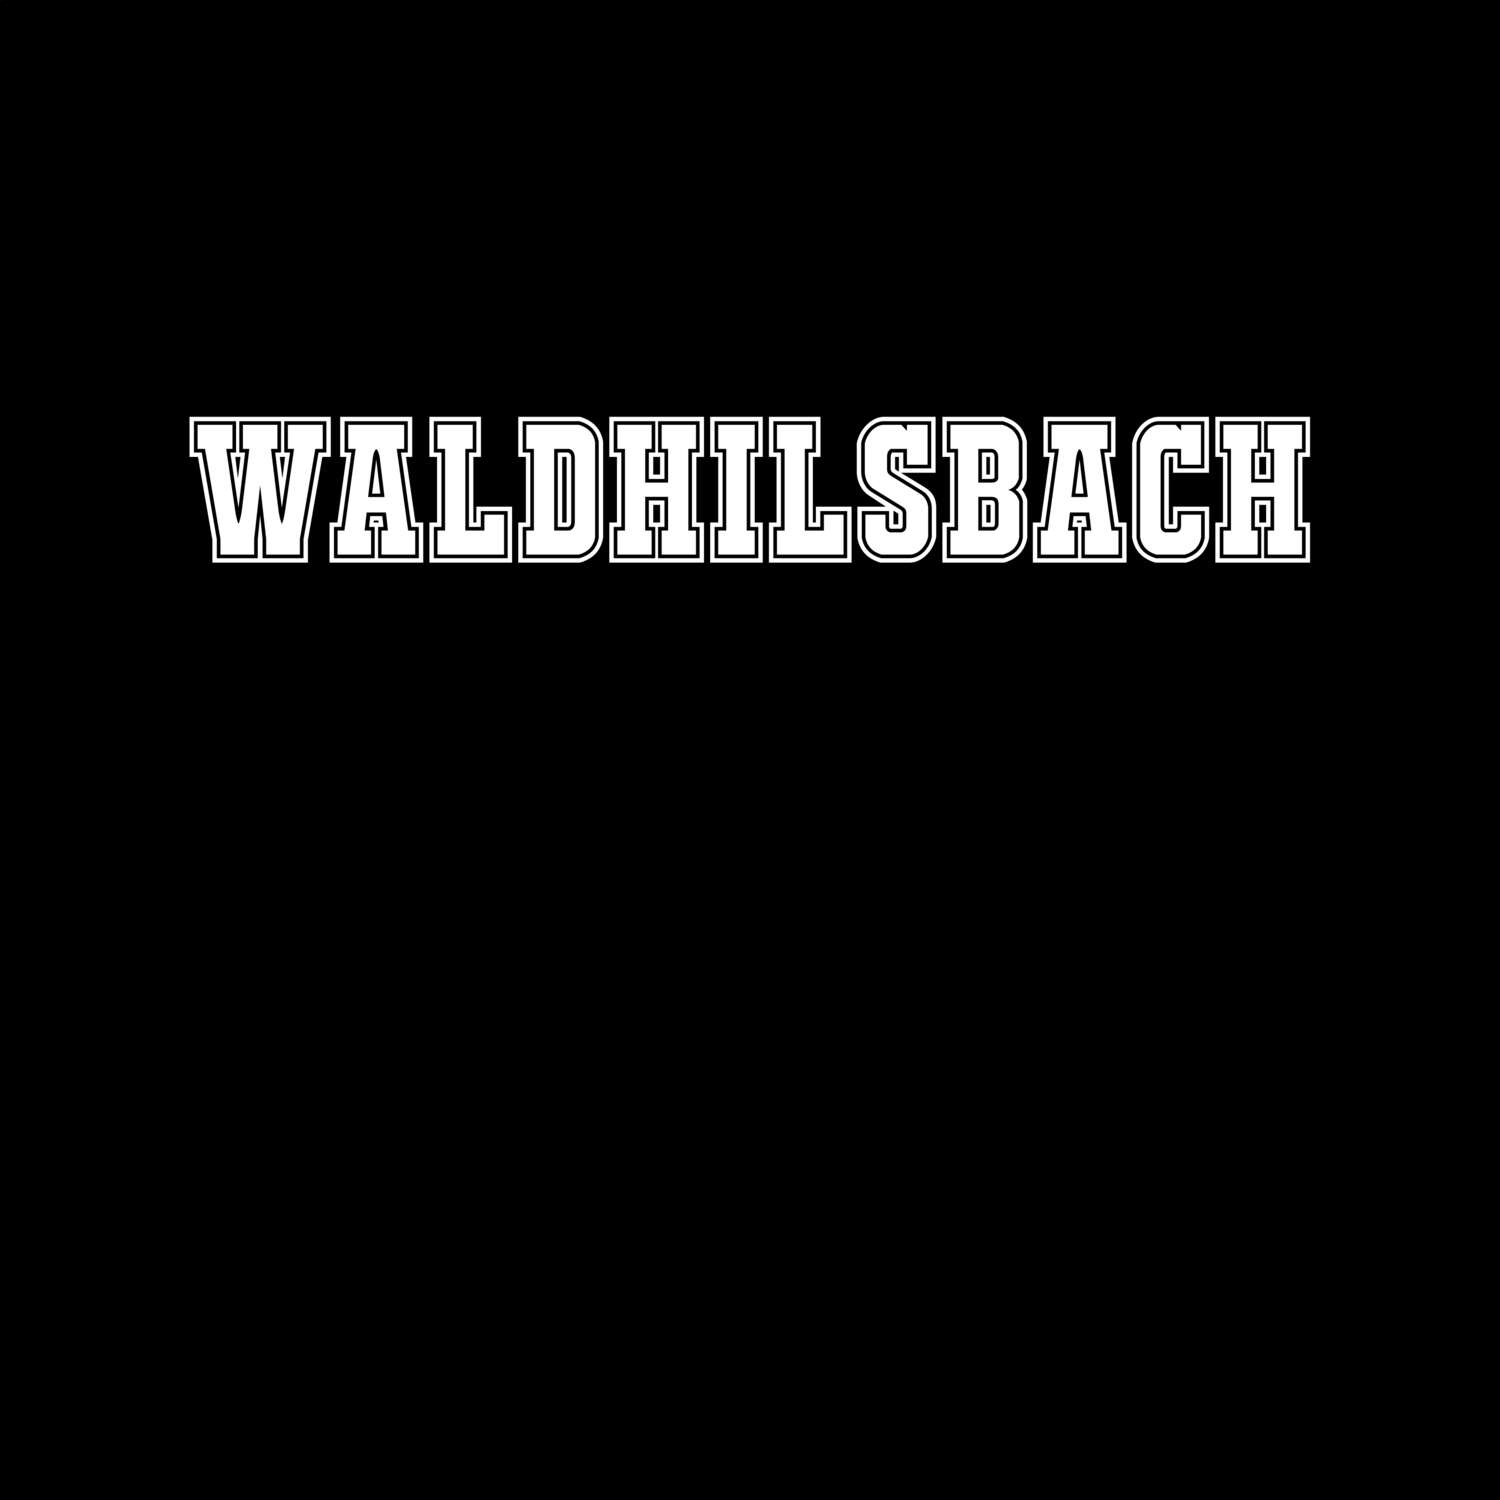 Waldhilsbach T-Shirt »Classic«